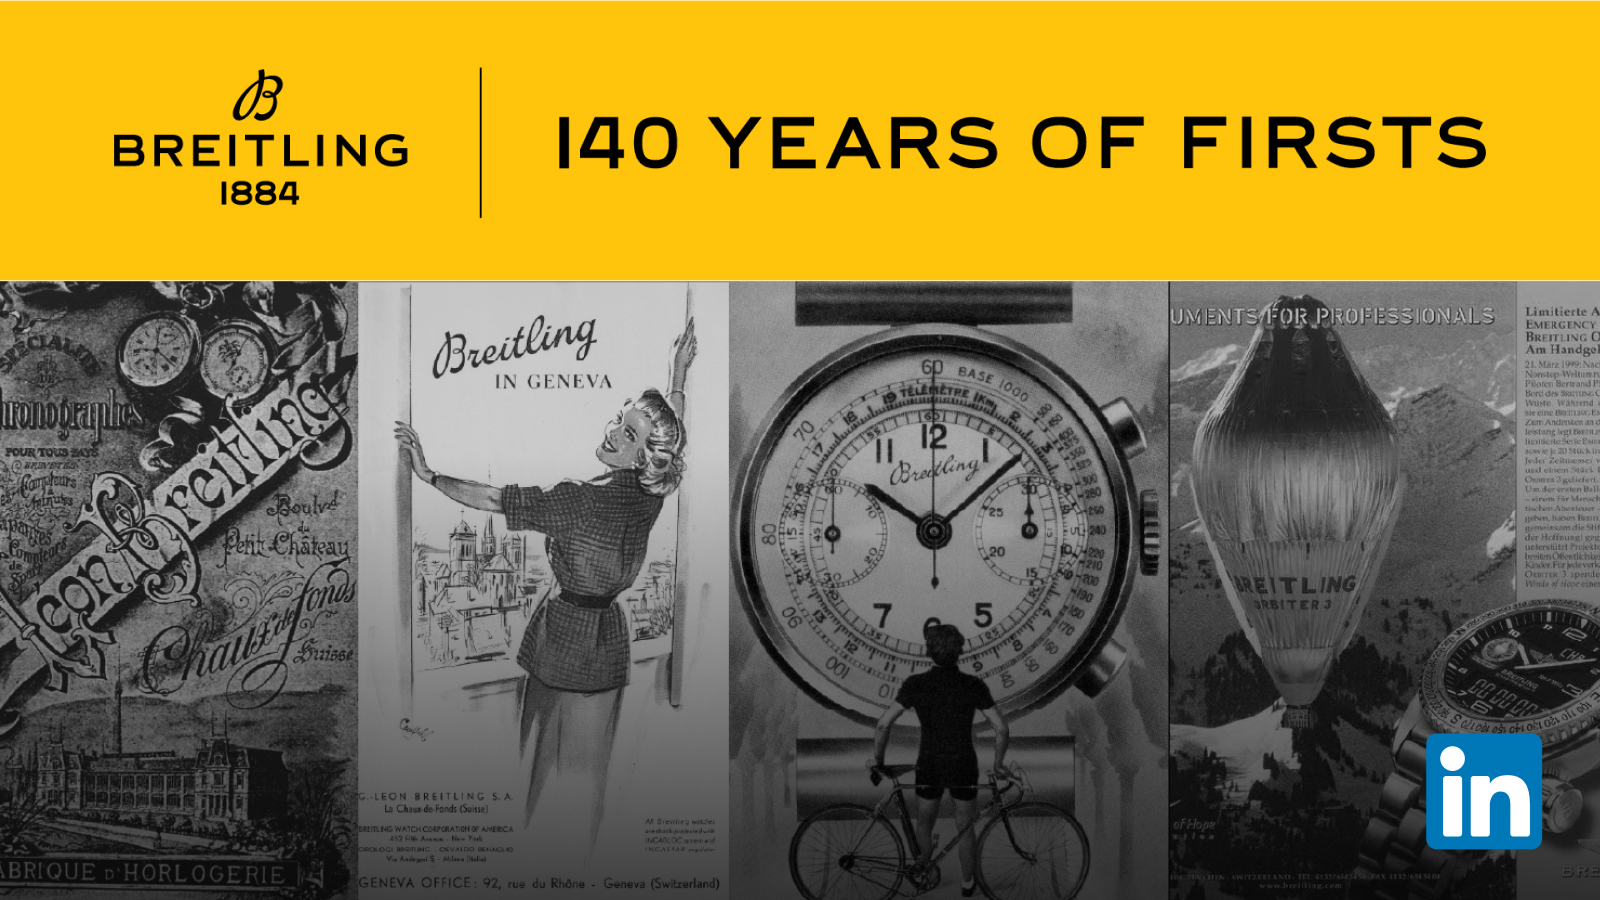 Sigue la trayectoria de Breitling en LinkedIn y suscríbete a nuestro boletín «Desde 1884» para conocerlo todo el contenido sobre nuestro legado relojero.